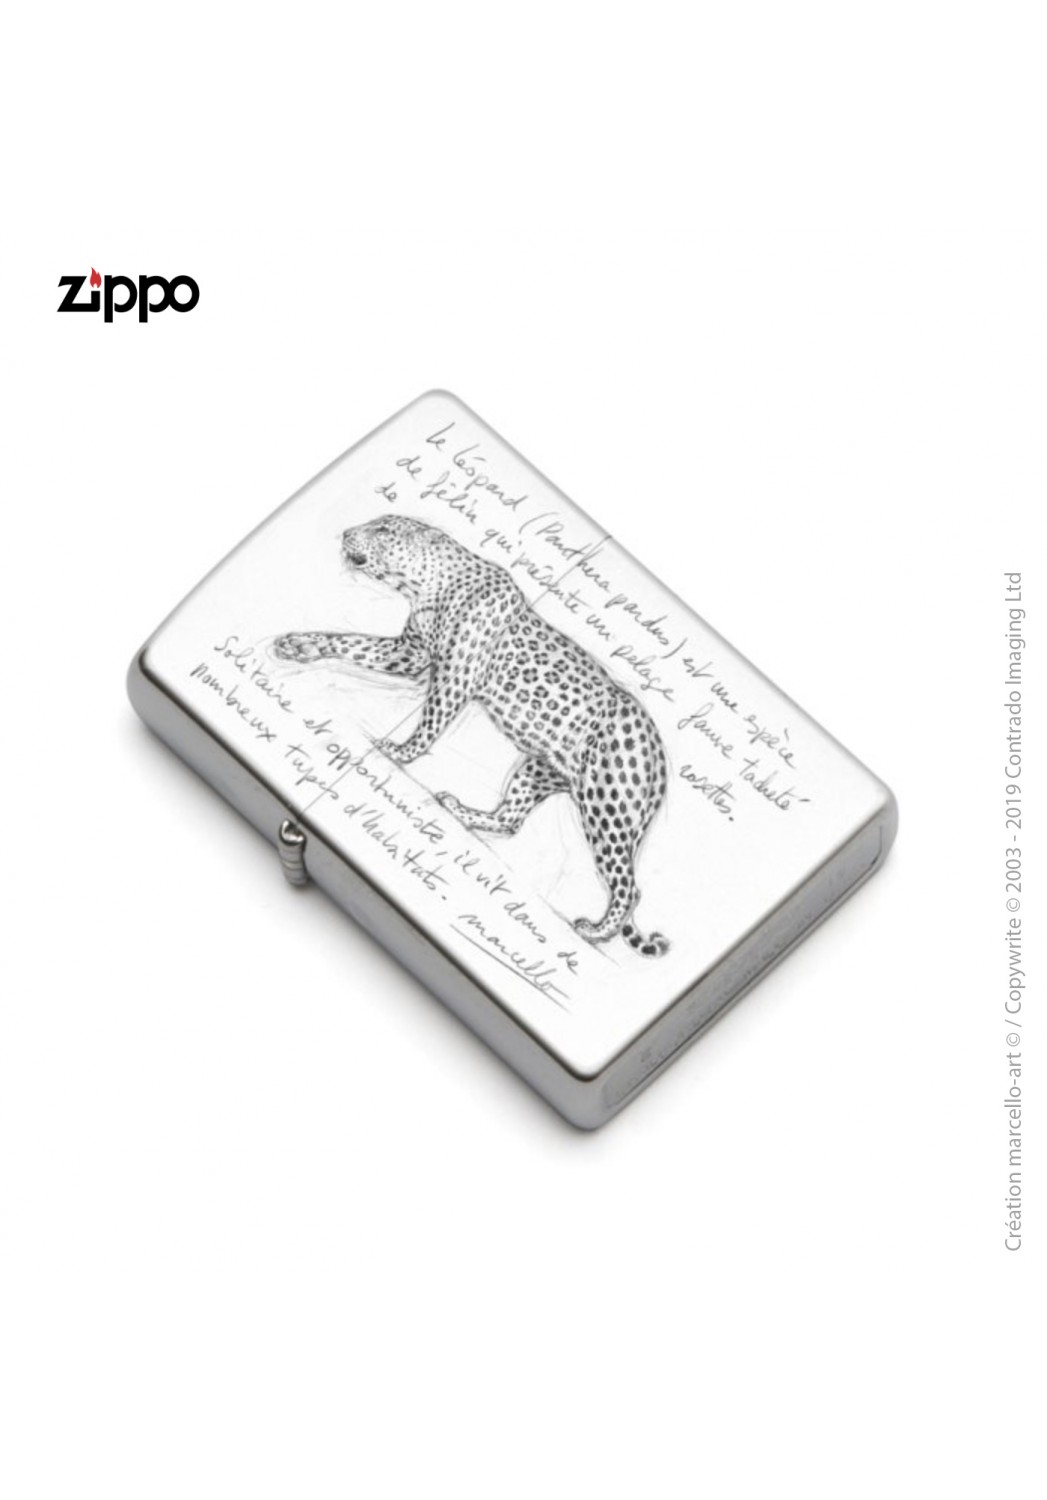 Marcello-art: Decoration accessoiries Zippo 180 leopard black & white